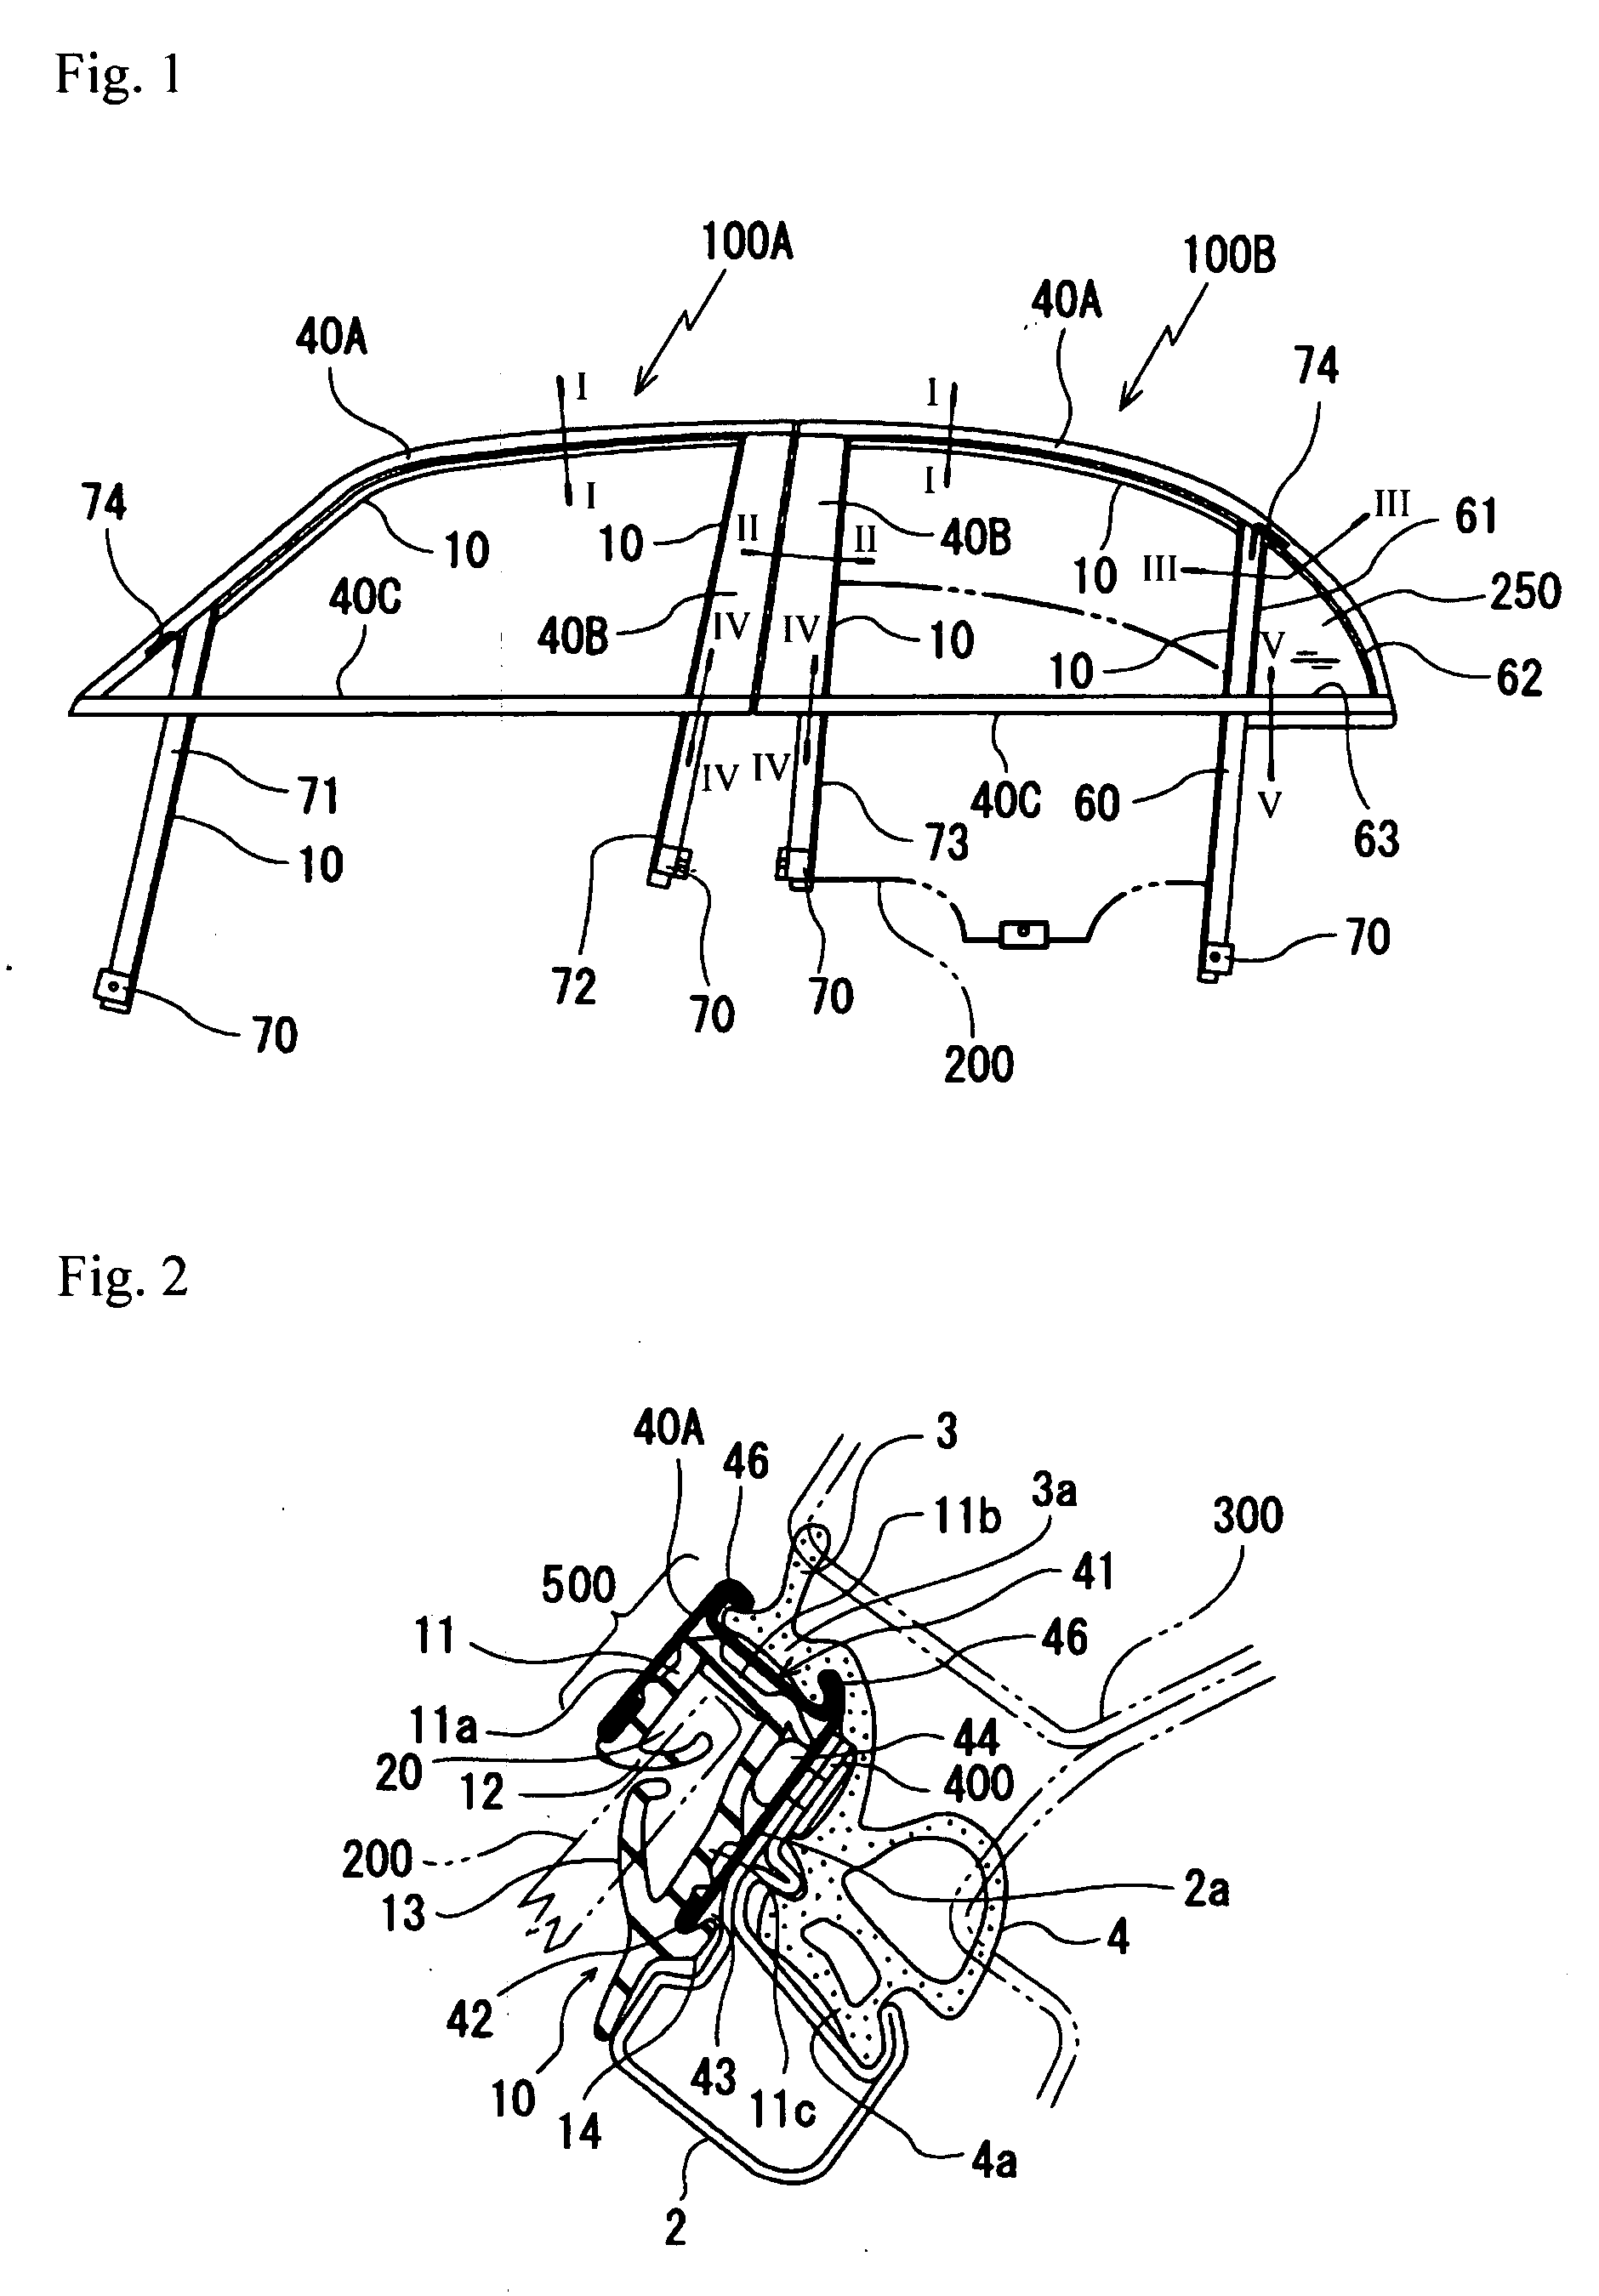 Method of assembling door parts on automobile door